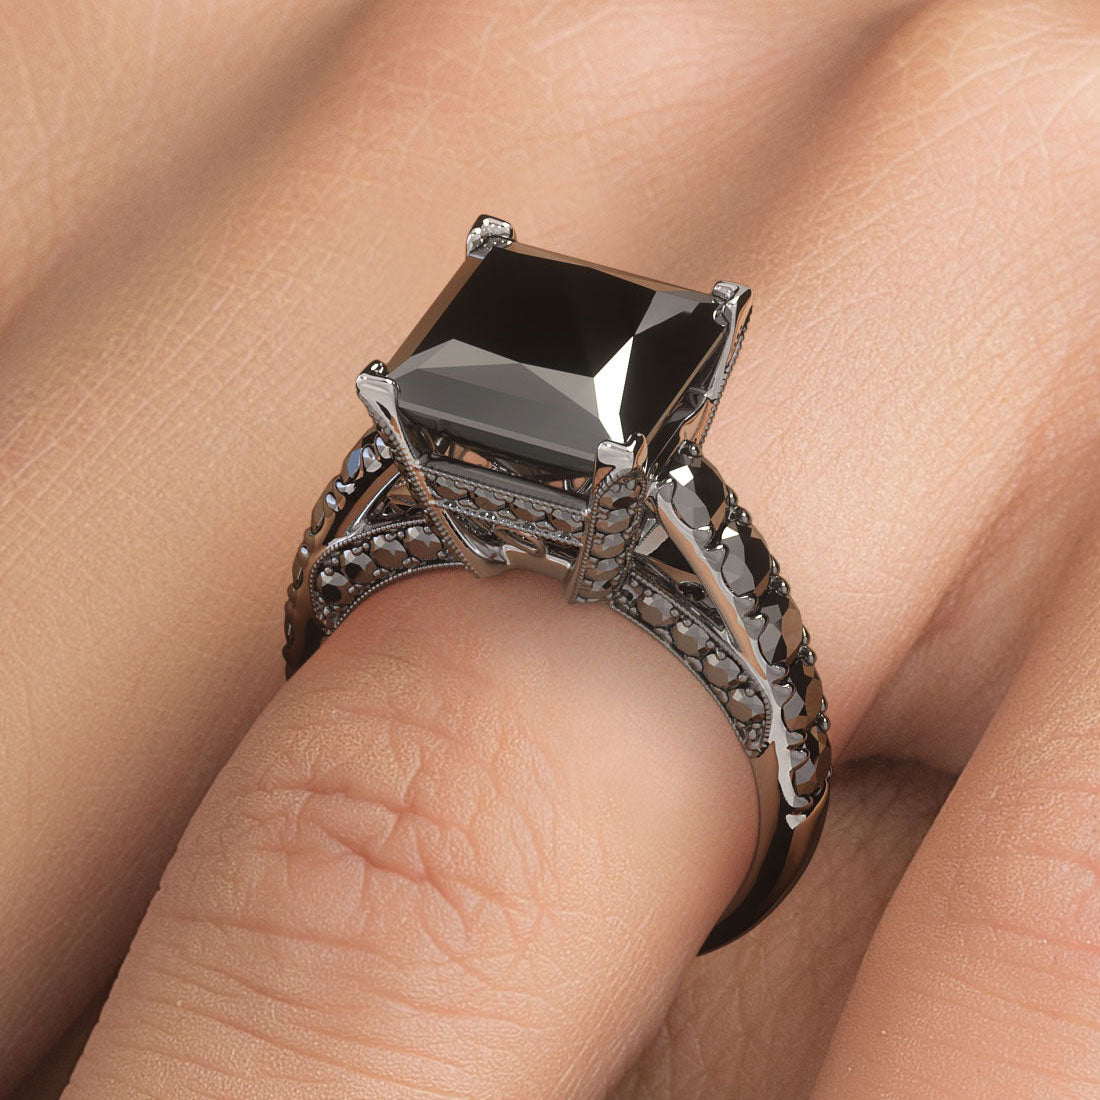 7.55 Carat Princess Cut Natural Black Diamond Engagement Ring 14k White Gold